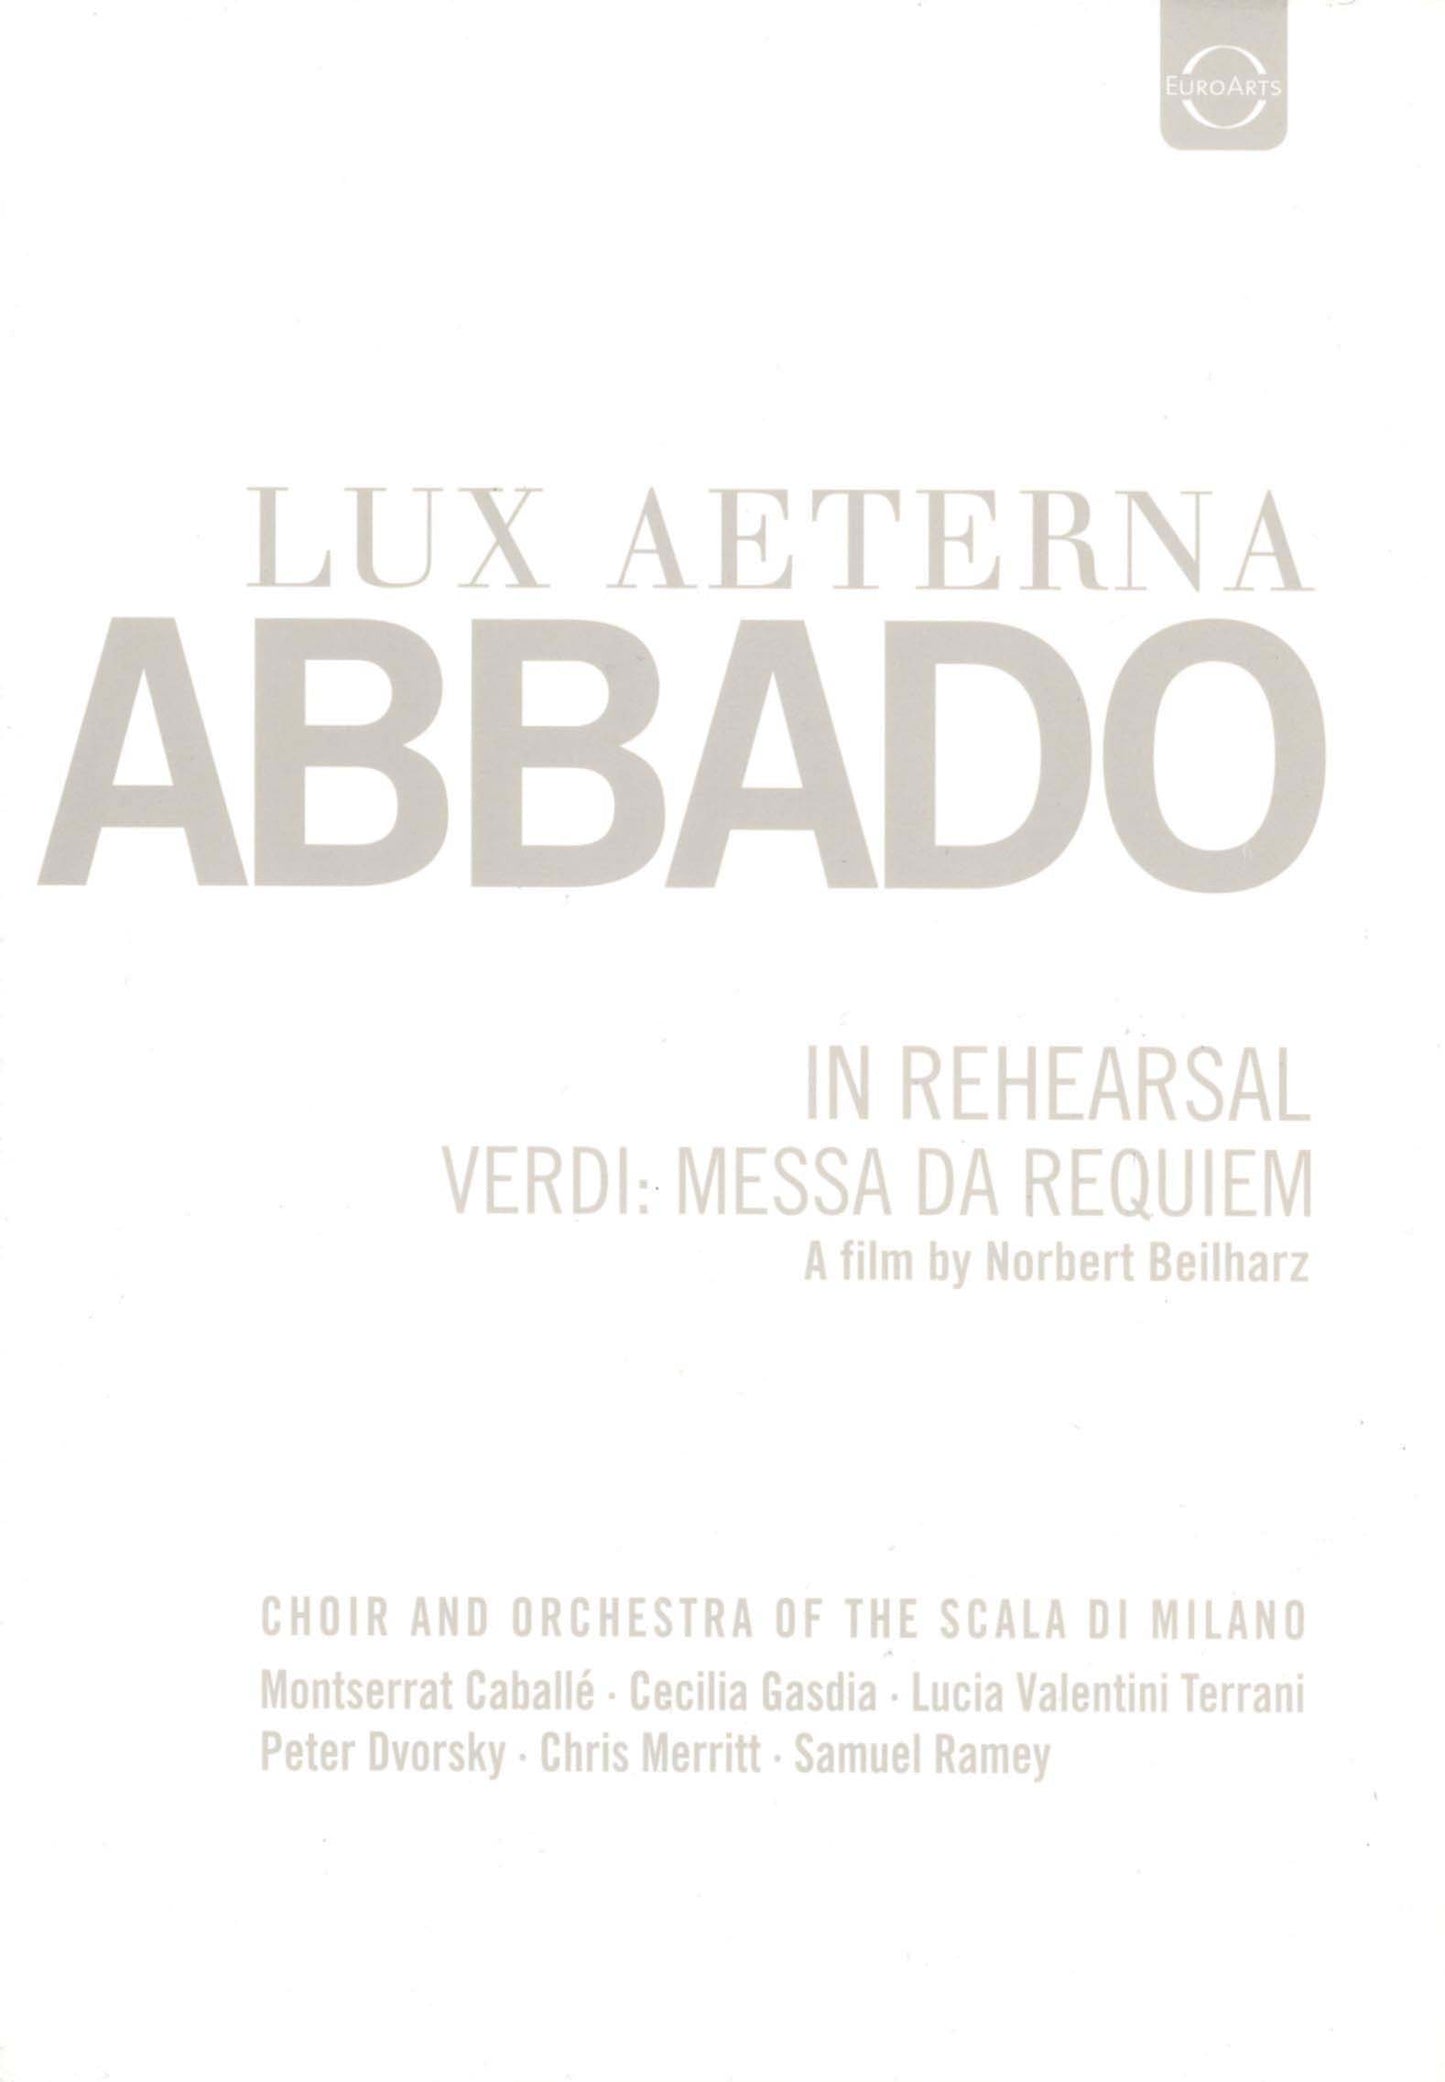 Lux Aeterna: Claudio Abbado in Rehearsal for Verdi's Messa da Requiem [Video] cover art